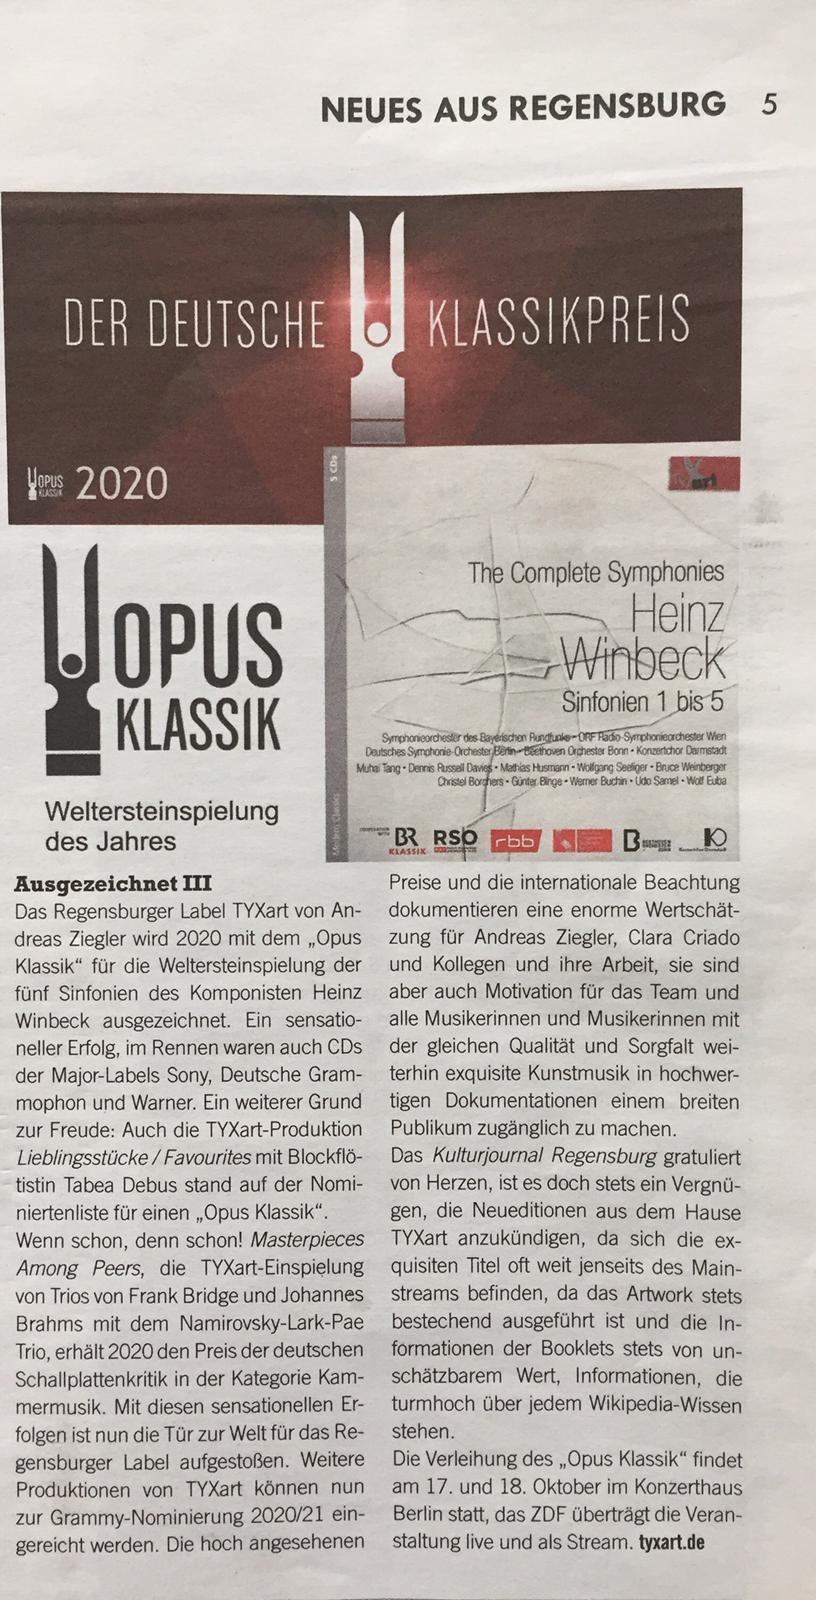 KulturJournal, Regensburg, Oktober 2020